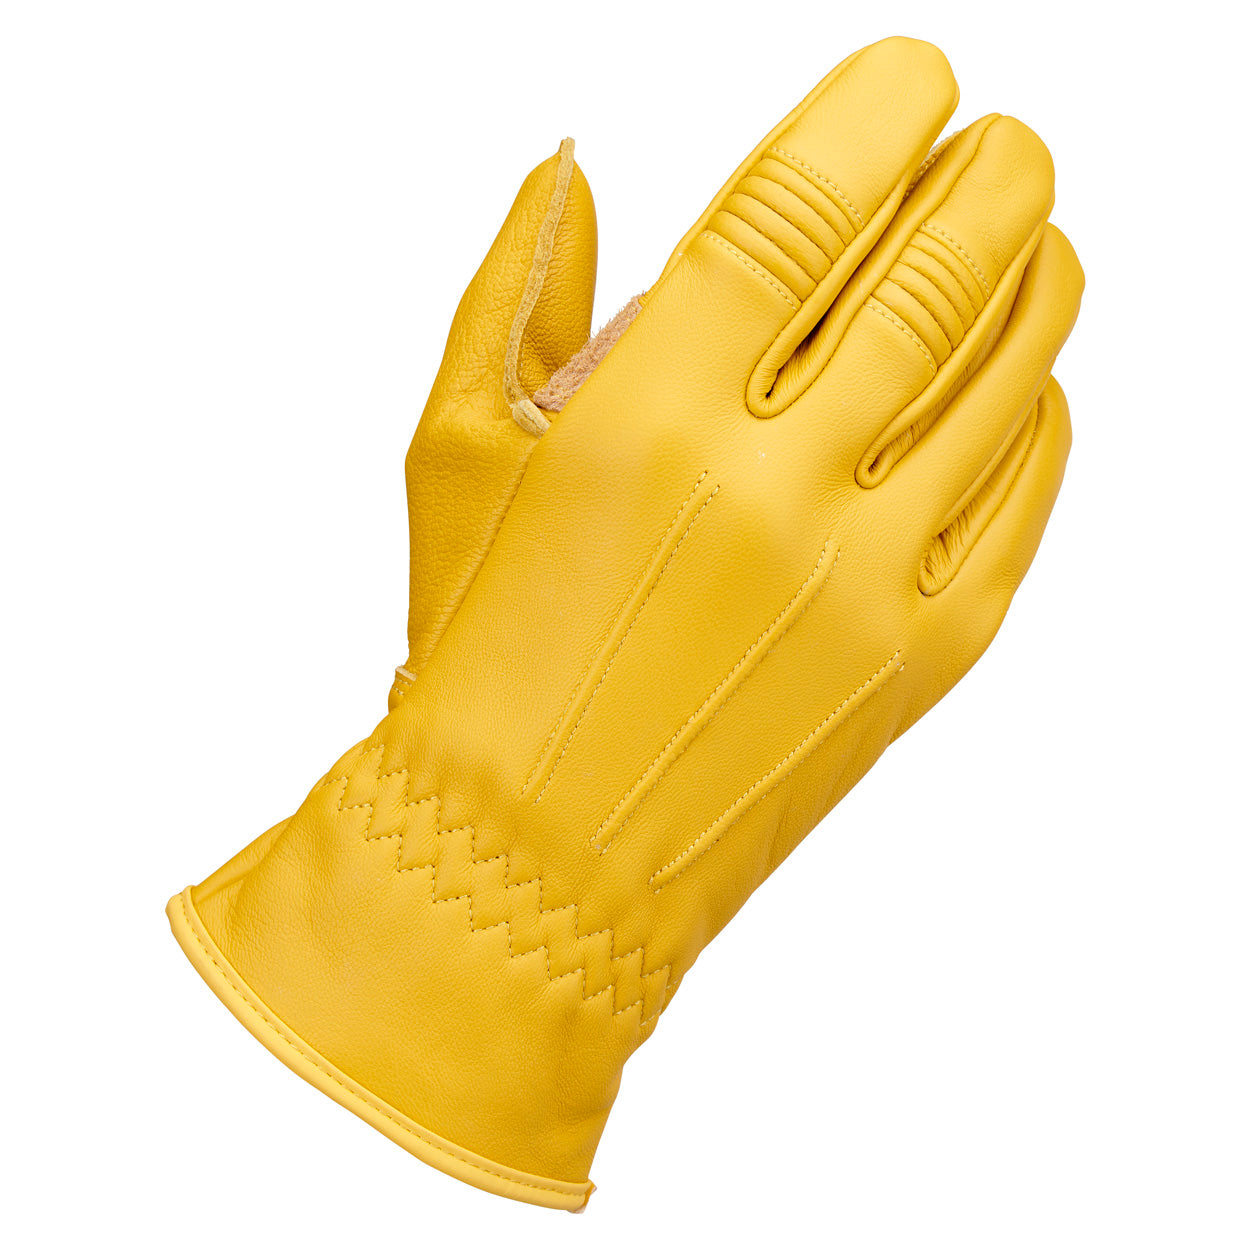 Biltwell Work Gloves 2.0 - Gold